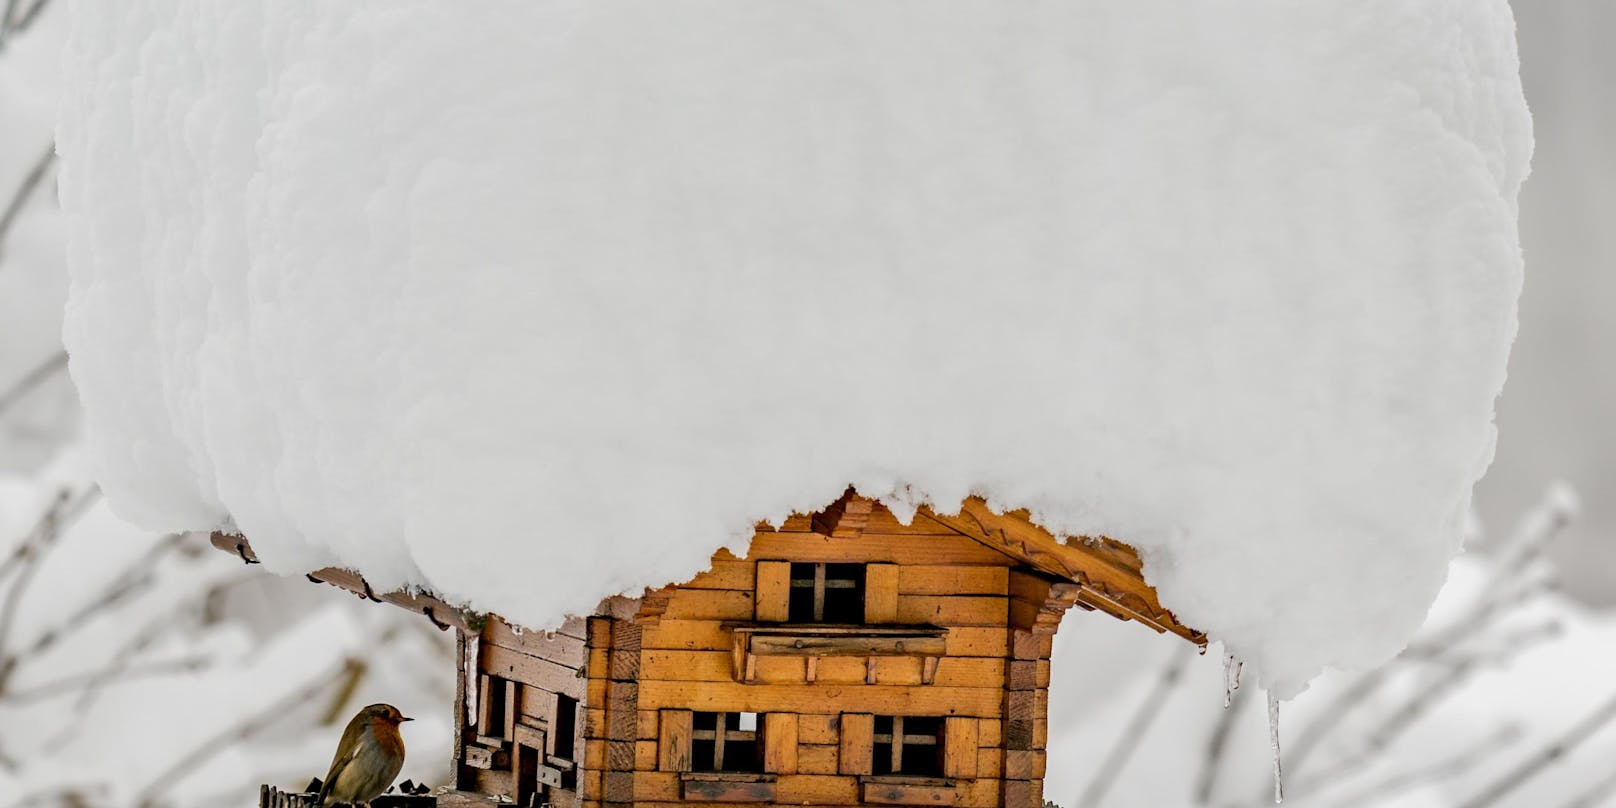 Die ungewöhnlich großen Neuschneemengen in Vorarlberg haben auch am 15. Jänner 2021 weiter Probleme verursacht. Im Bild: Ein mit Schnee bedecktes Vogelhaus in Hohenems